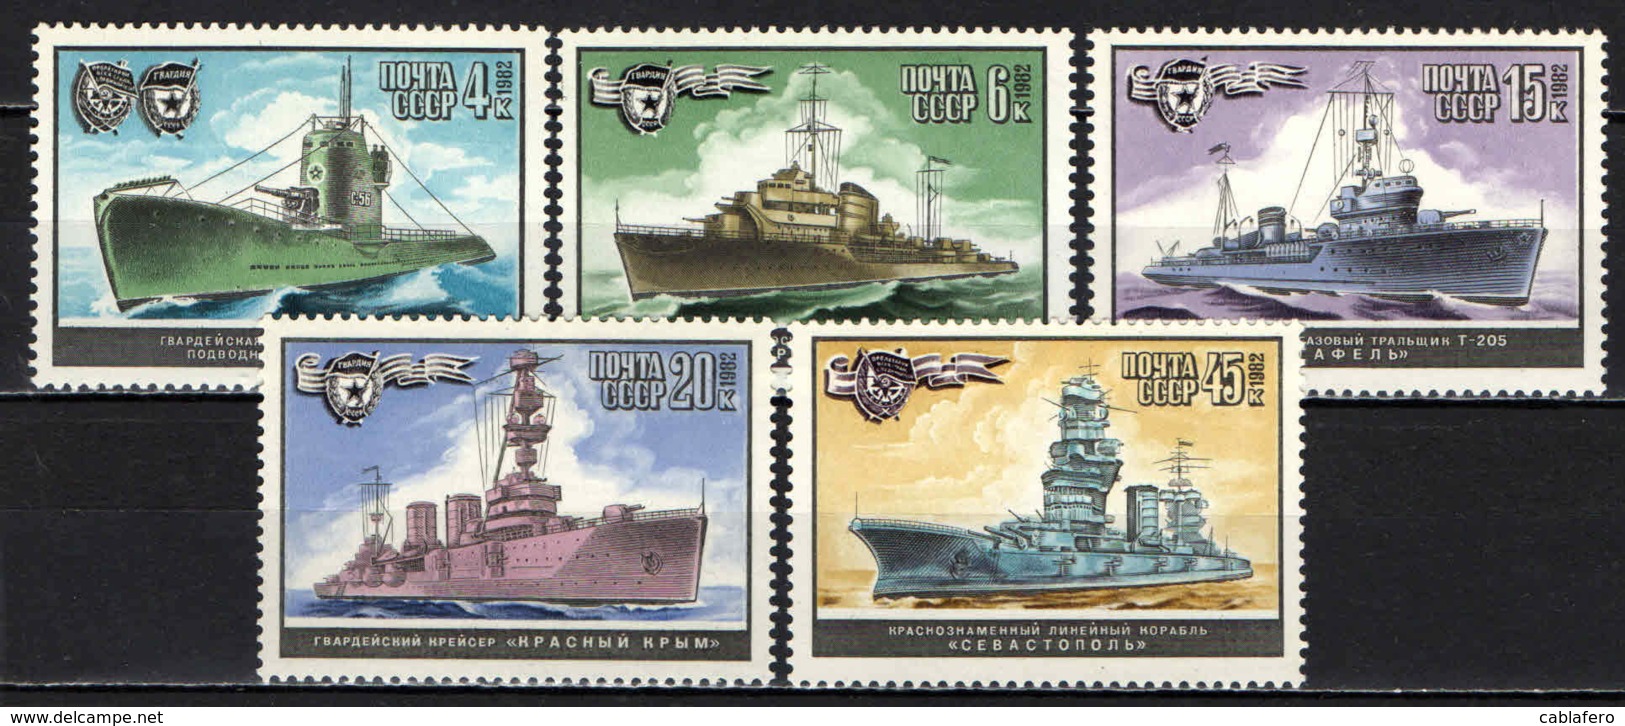 URSS - 1982 - World War II Warships - MNH - Nuovi